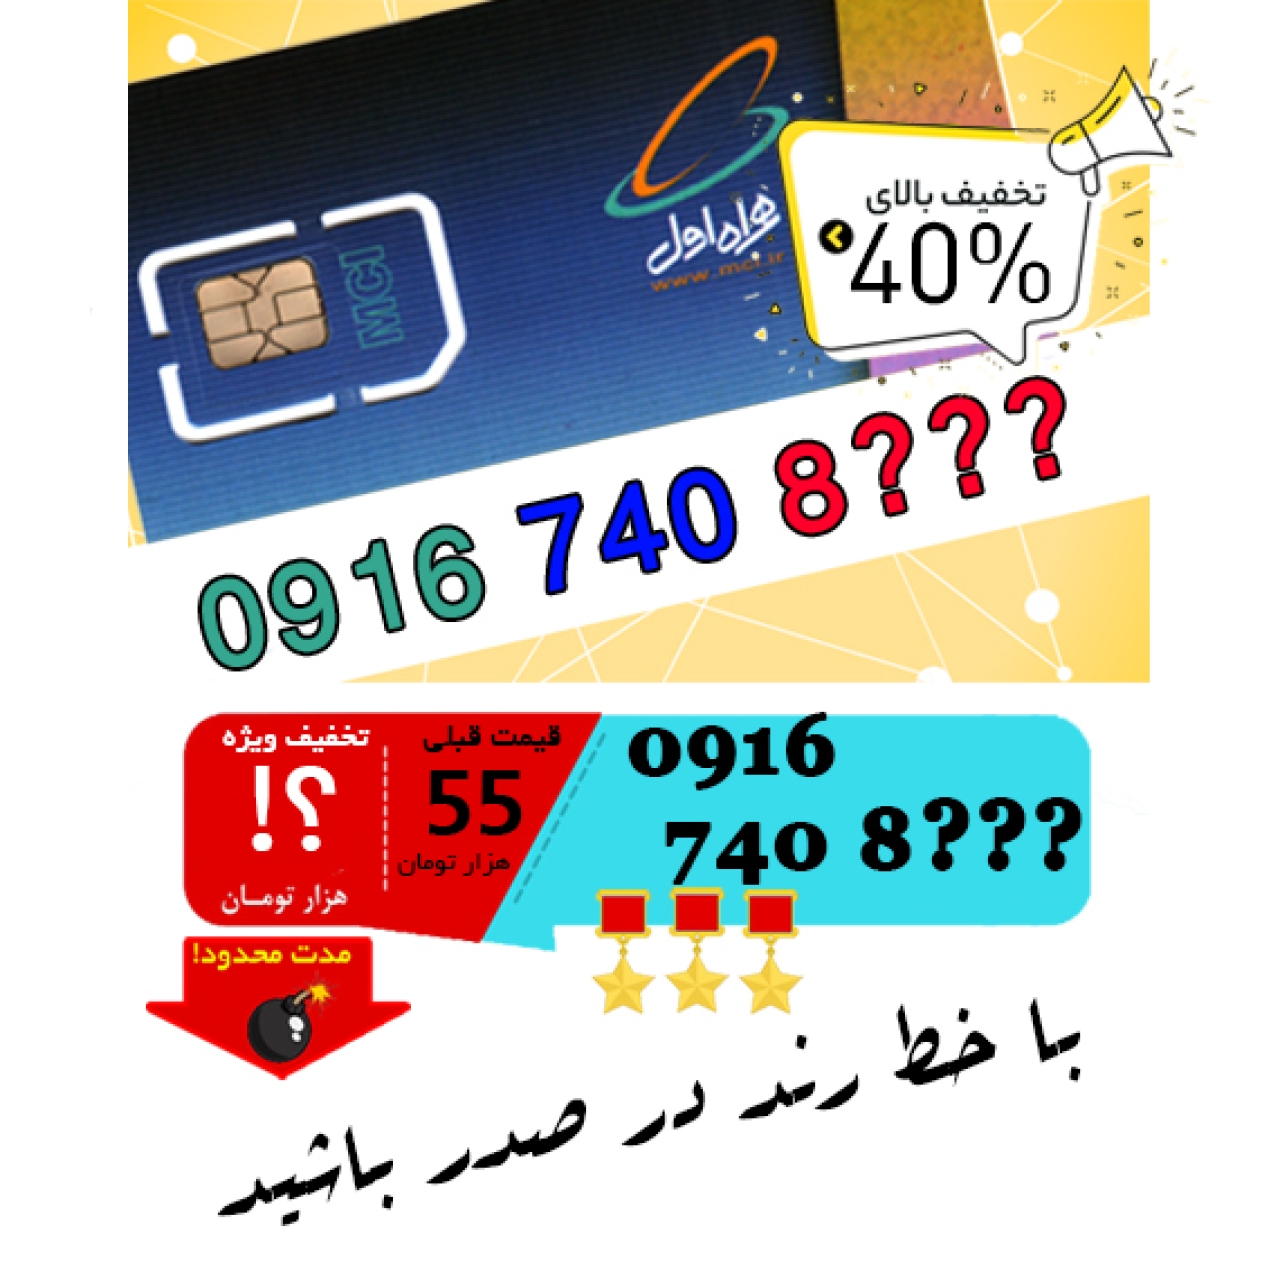 حراج سیم کارت اعتباری همراه اول 09167408